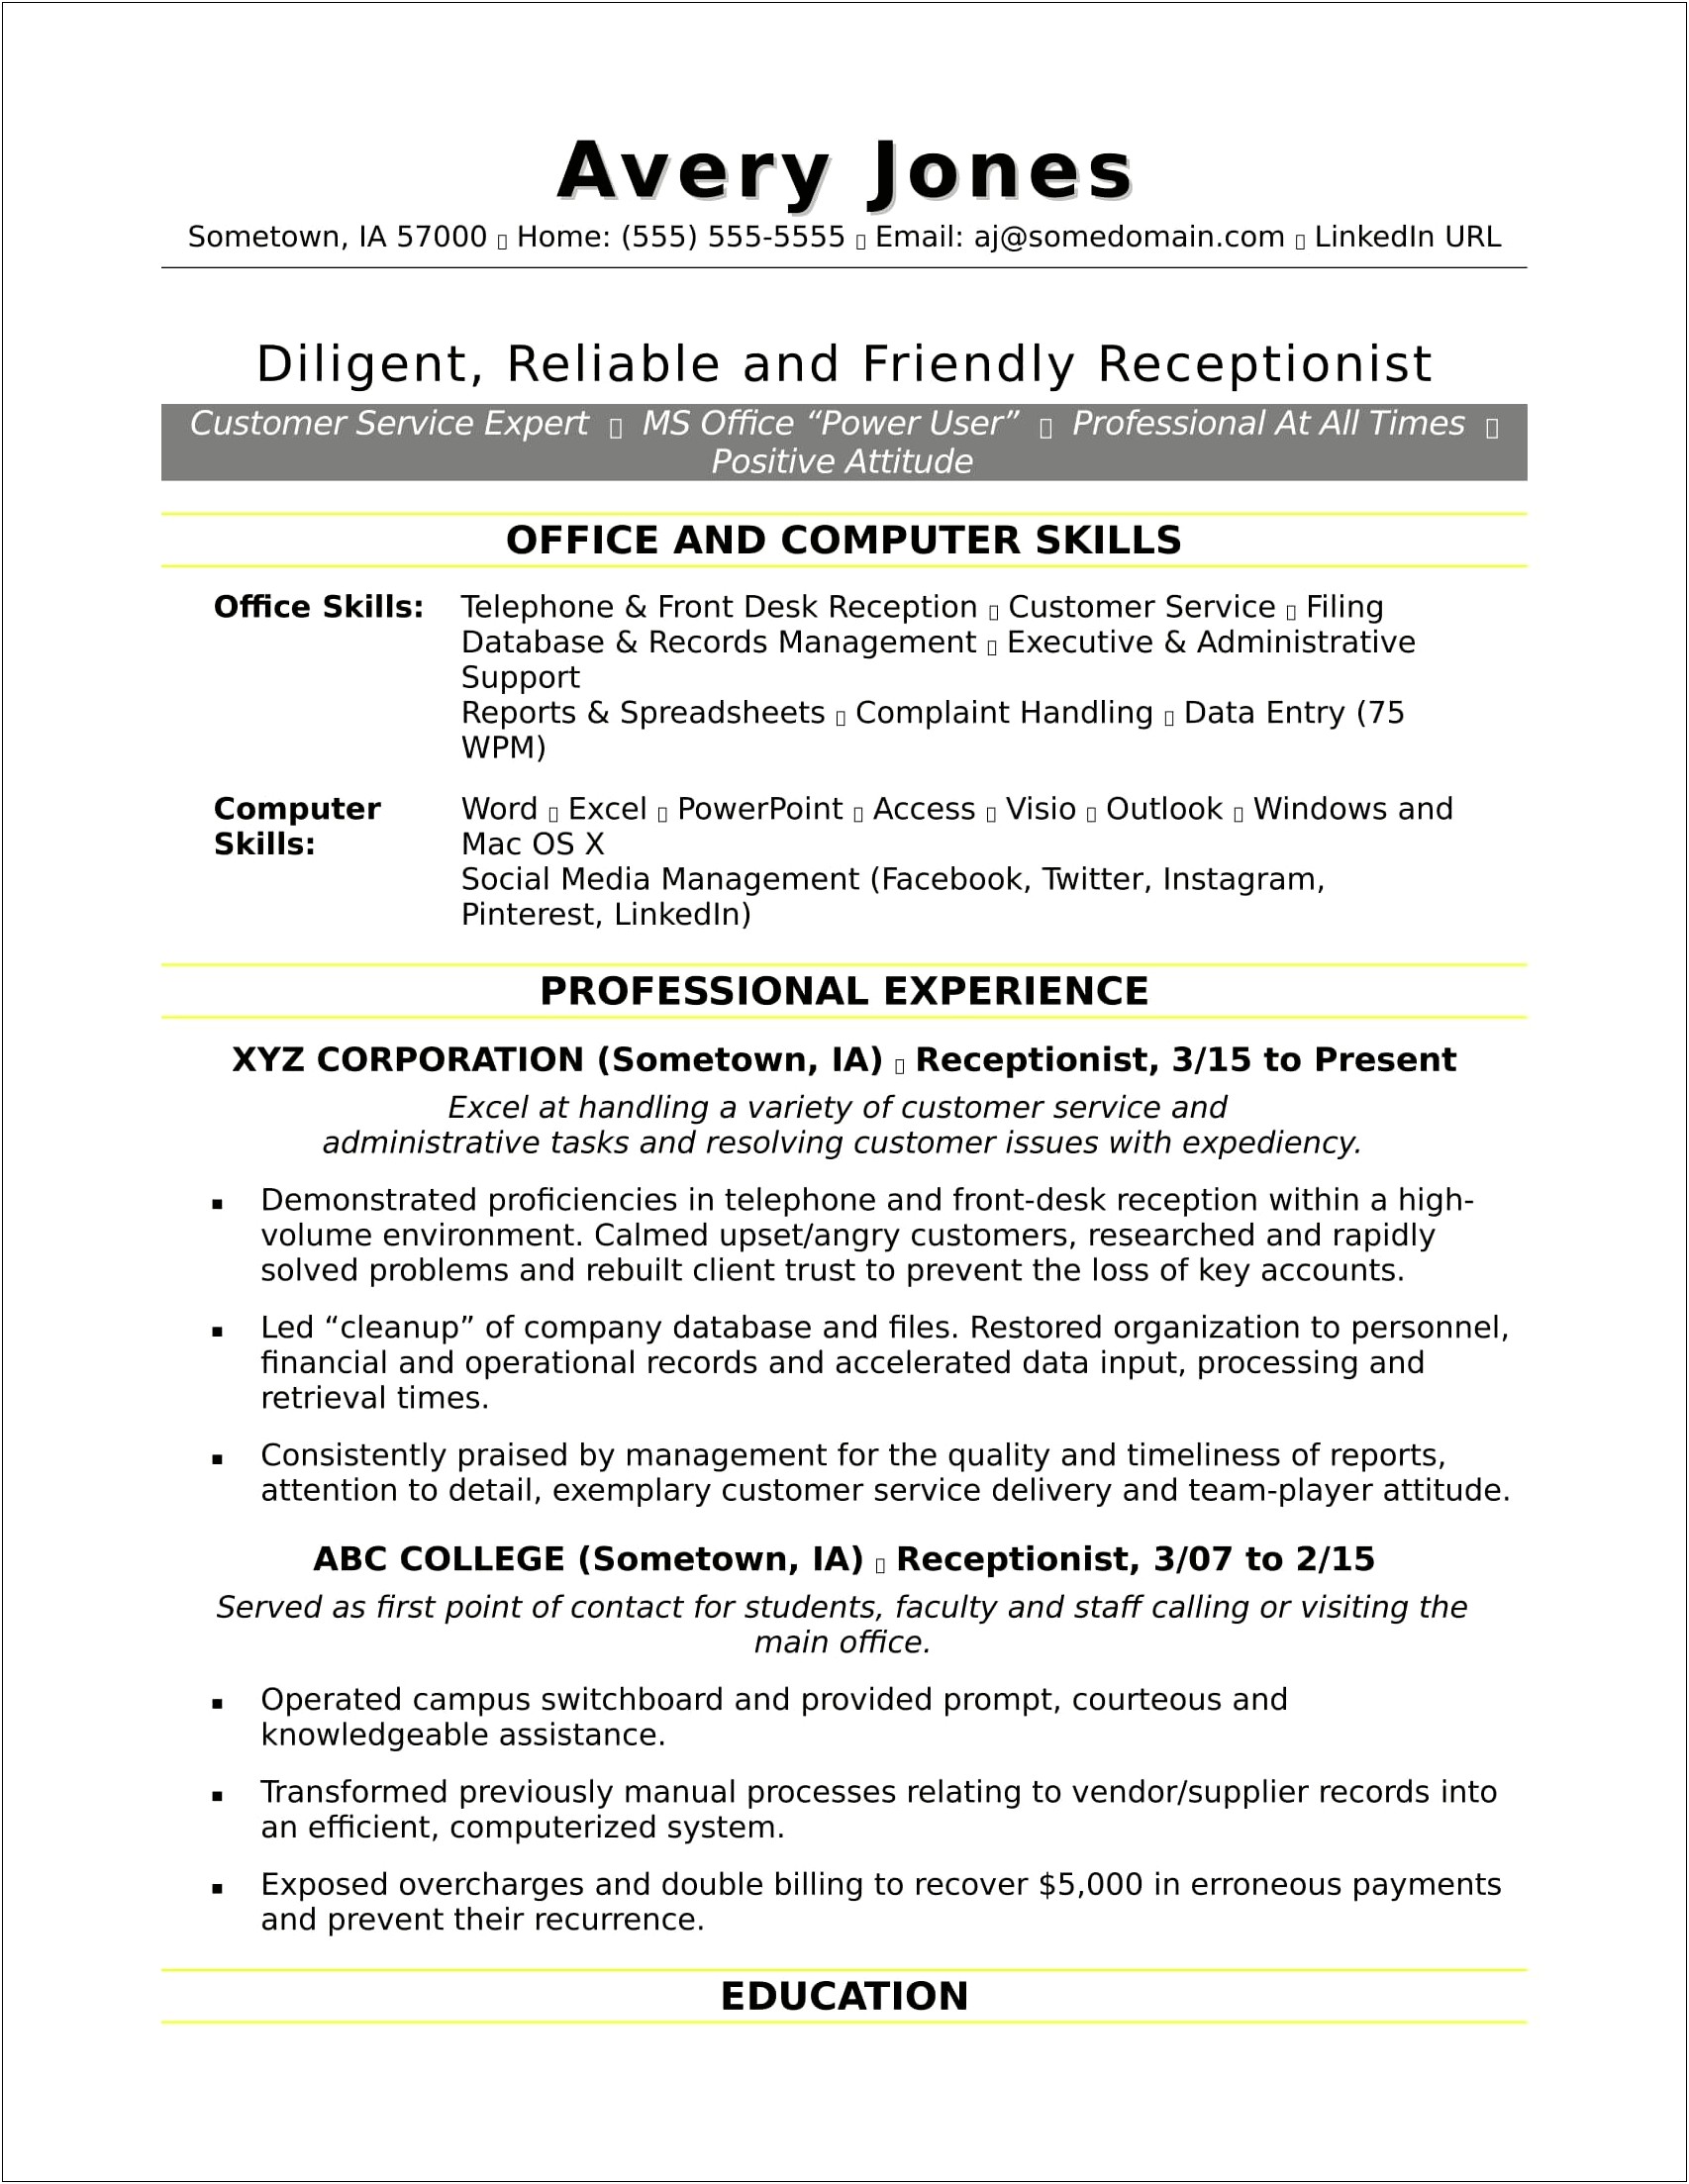 Sample Resume For Office Clerk Position